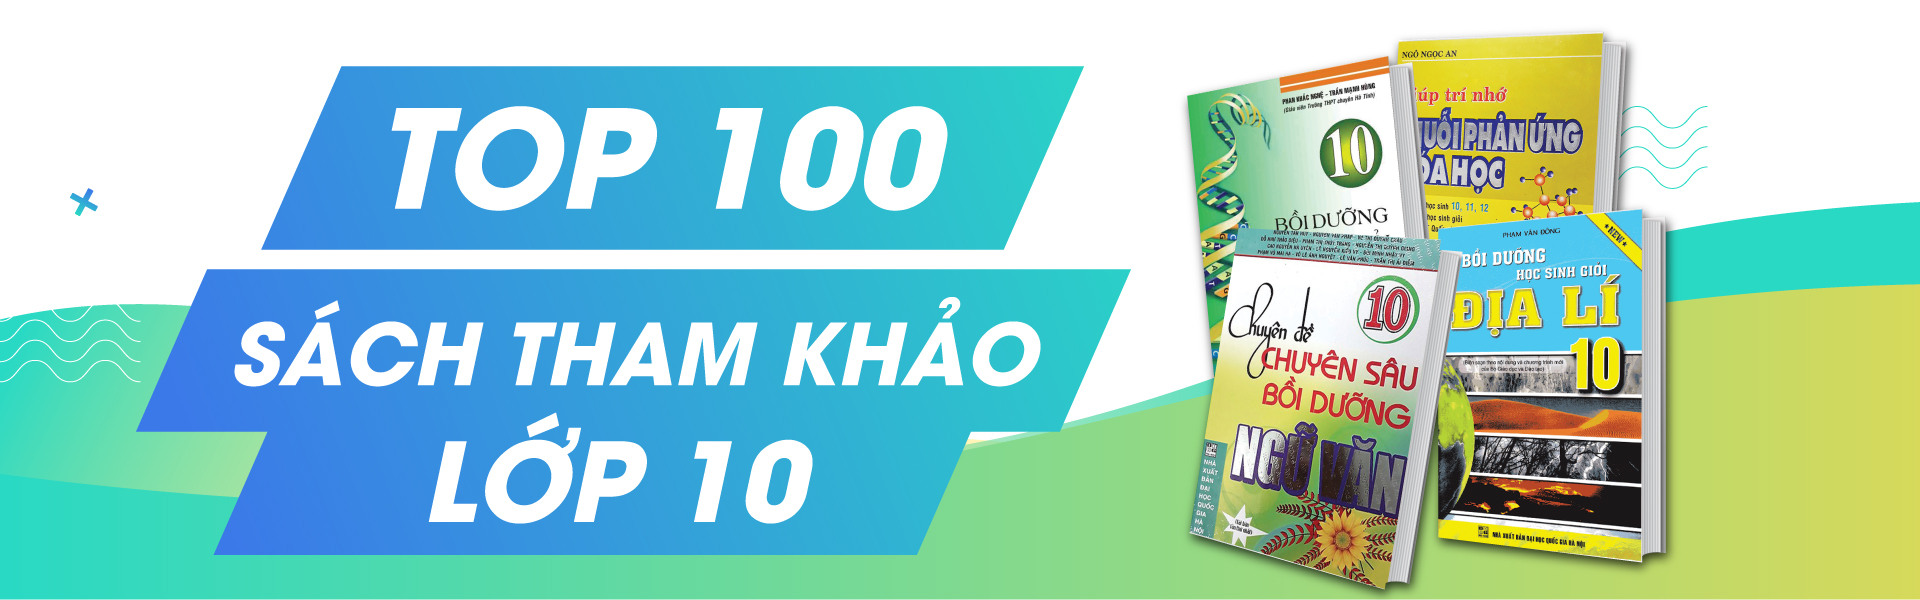 TOP 100 Sách Tham Khảo Lớp 10 Nên Mua Giúp Học Tốt Đều Tất Cả Các Môn